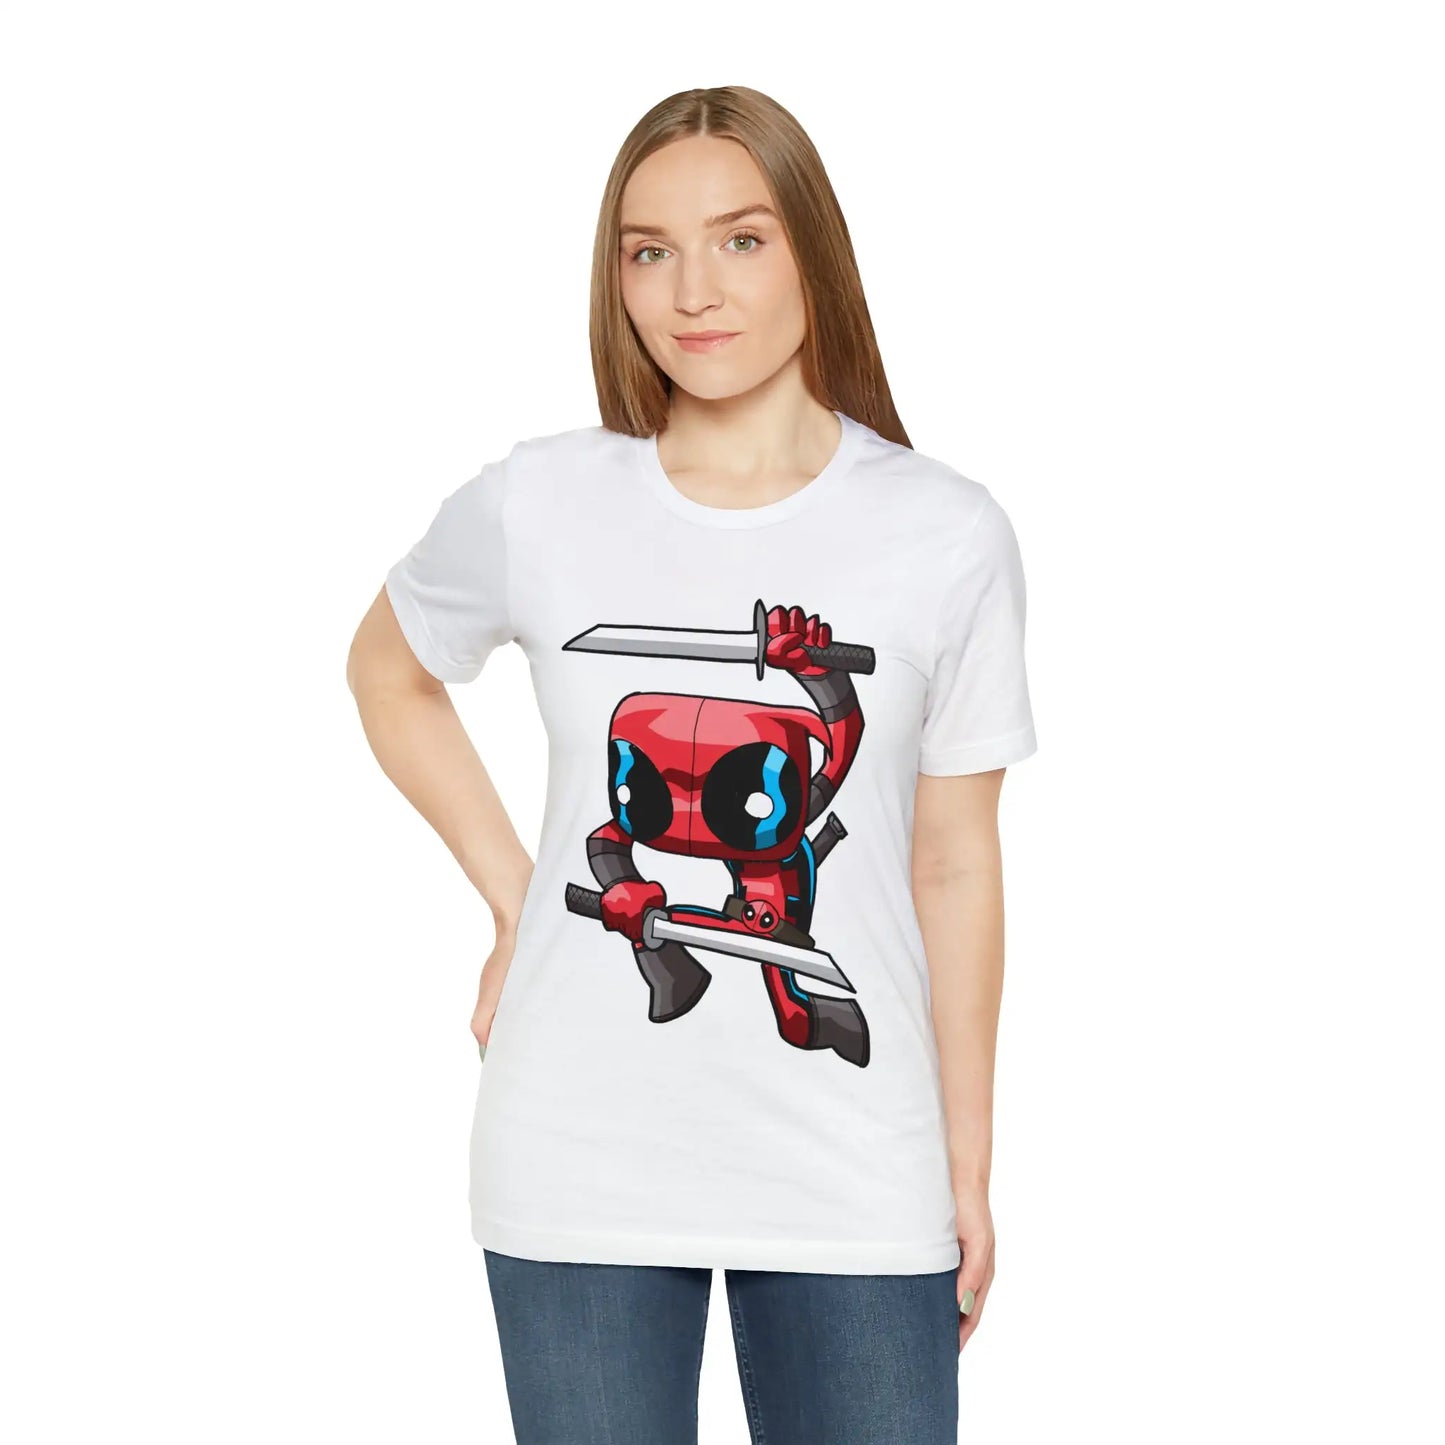 Deadpool T-shirt Cartoon Parody Tee Unisex For Men and Women